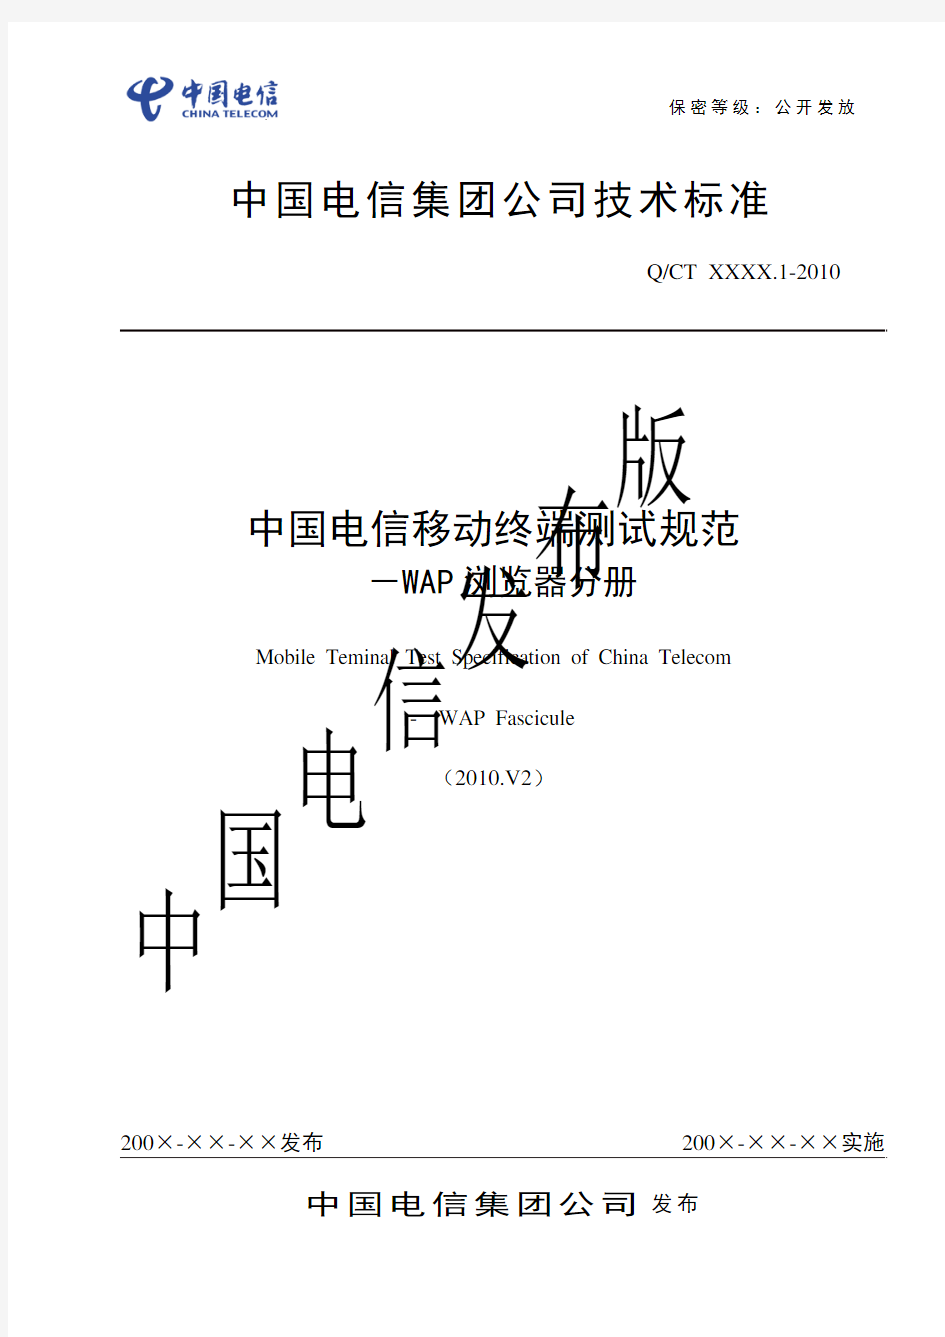 中国电信移动终端测试规范-WAP浏览器分册2010.V2